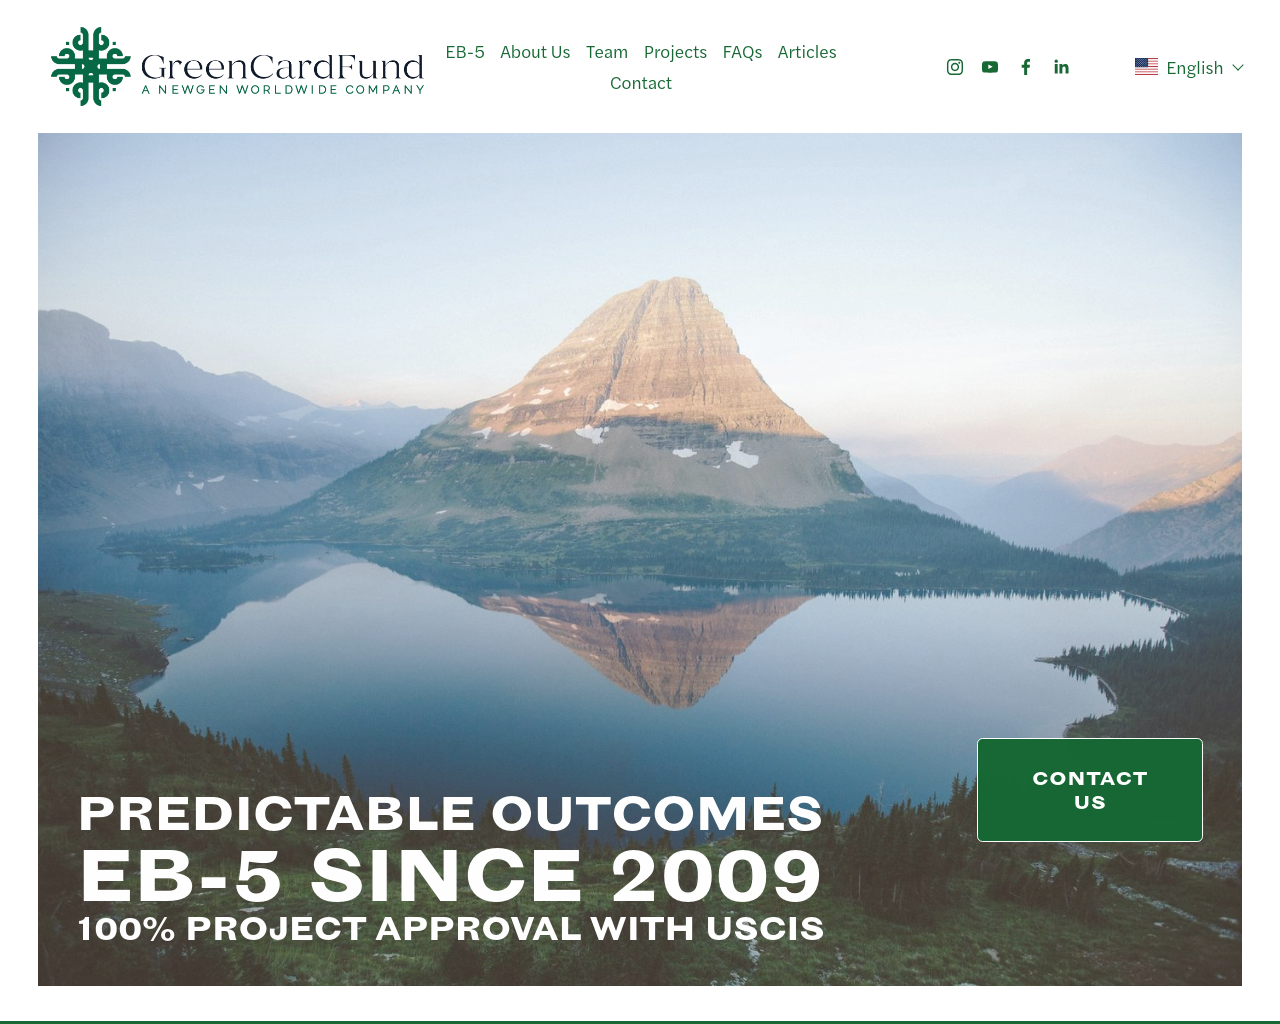 greencardfund.com